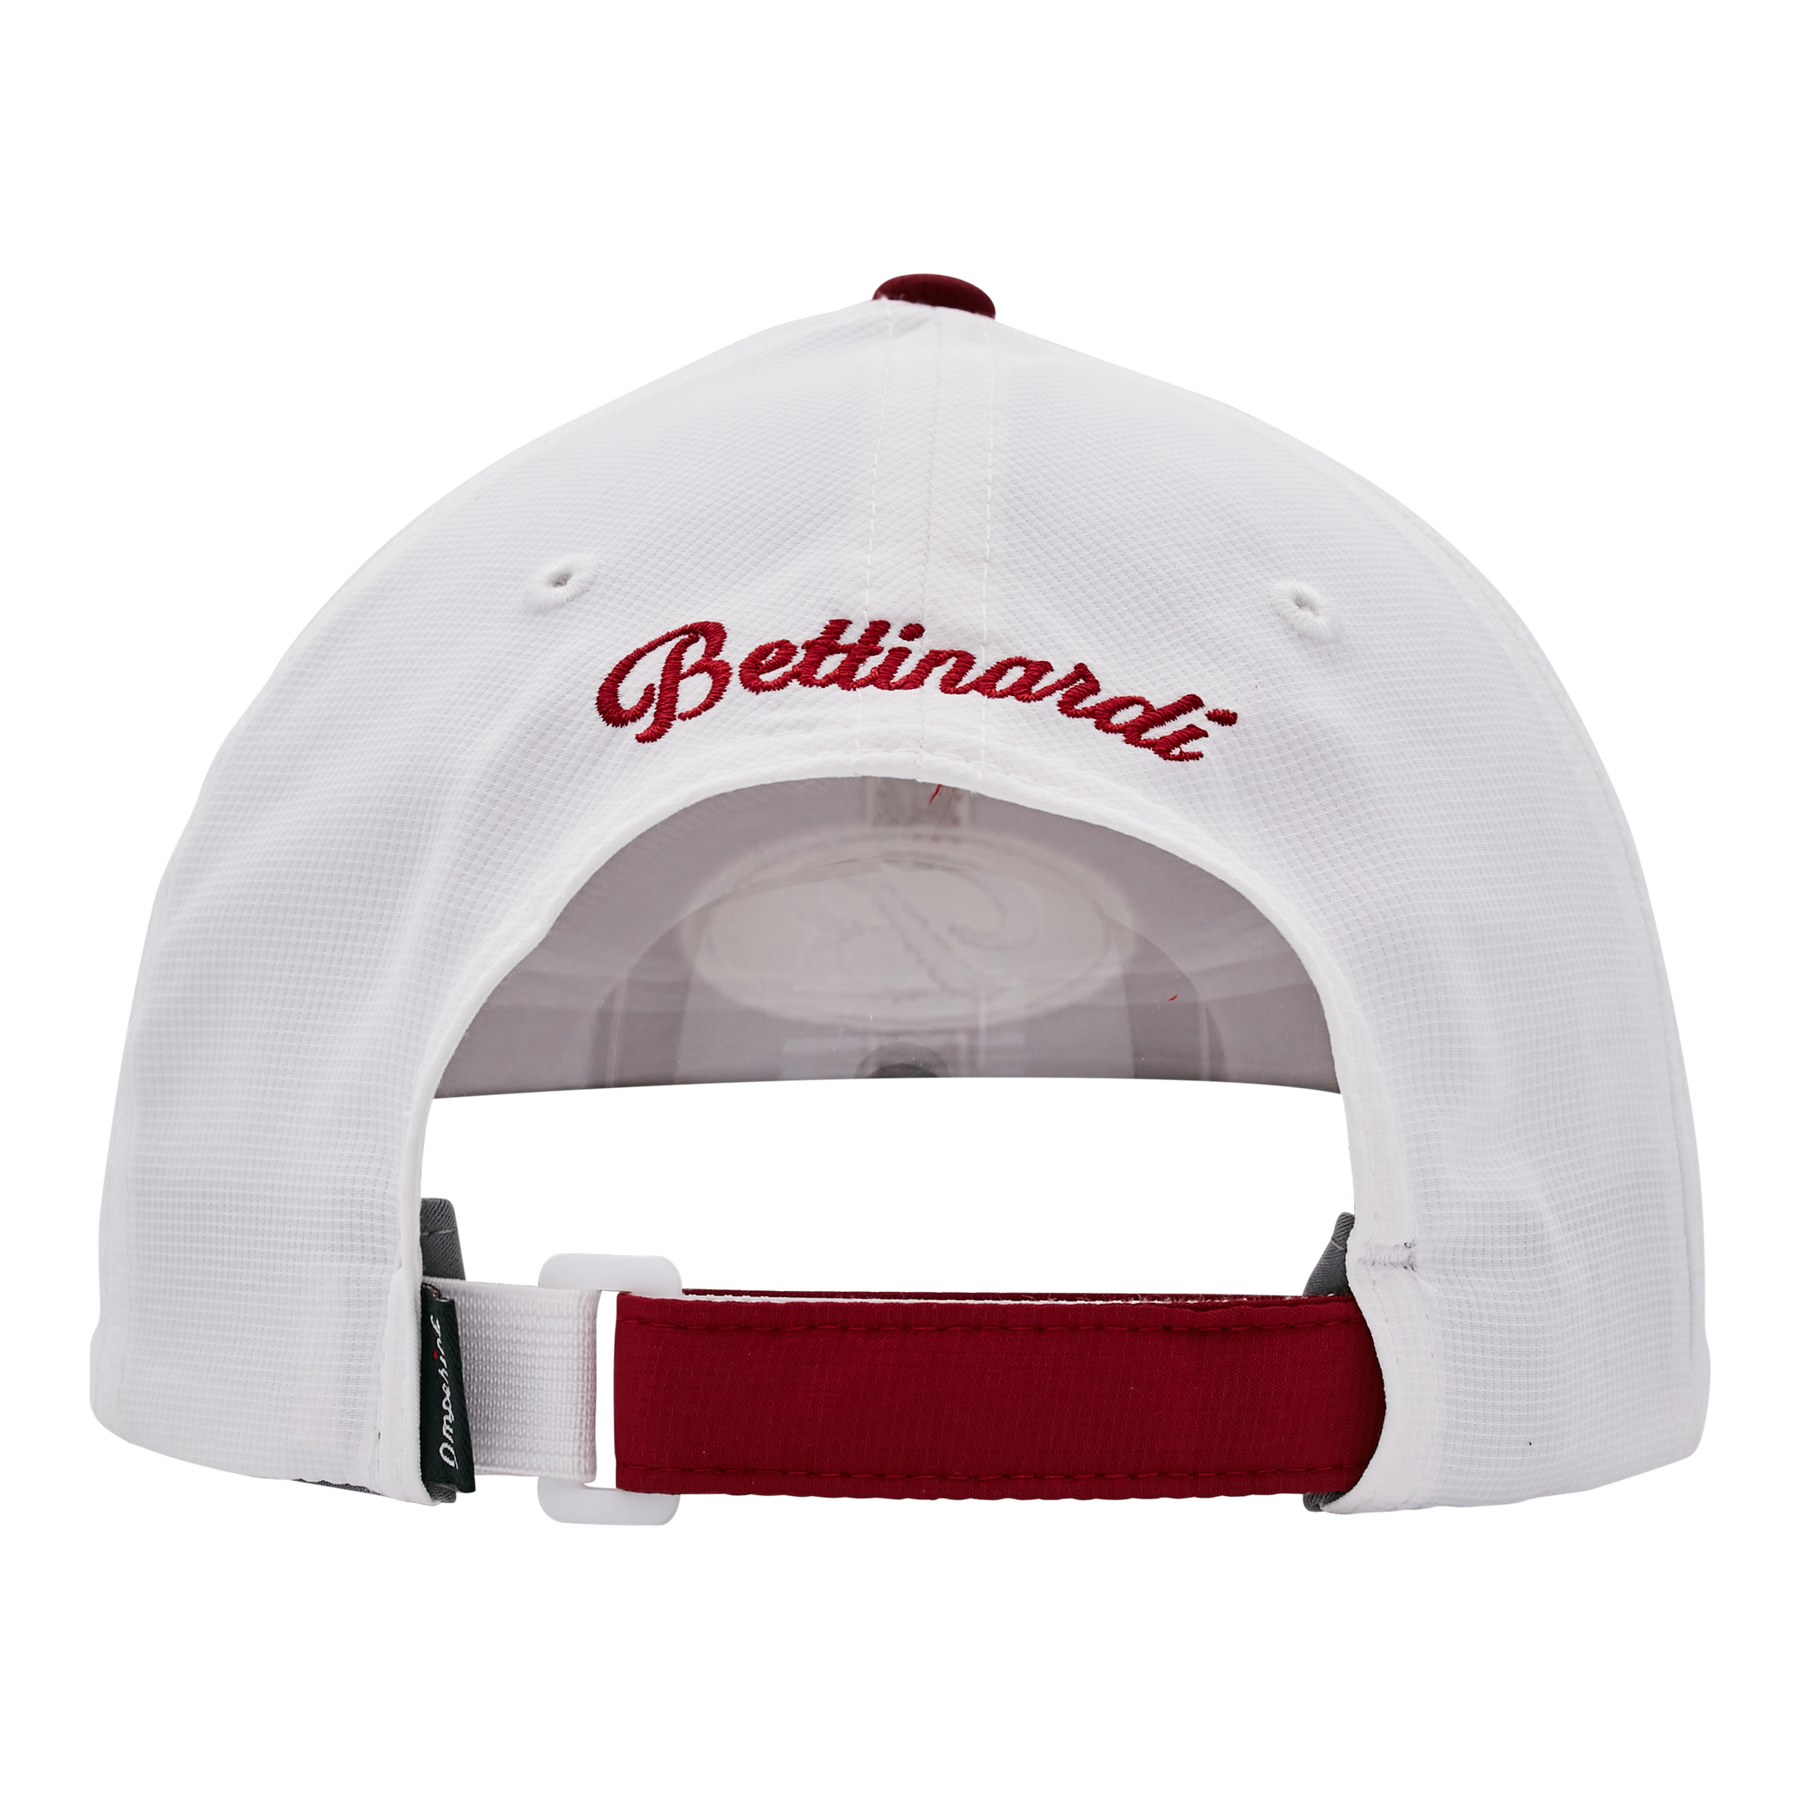 Bettinardi x Rawlings Backyard Baseball Hat